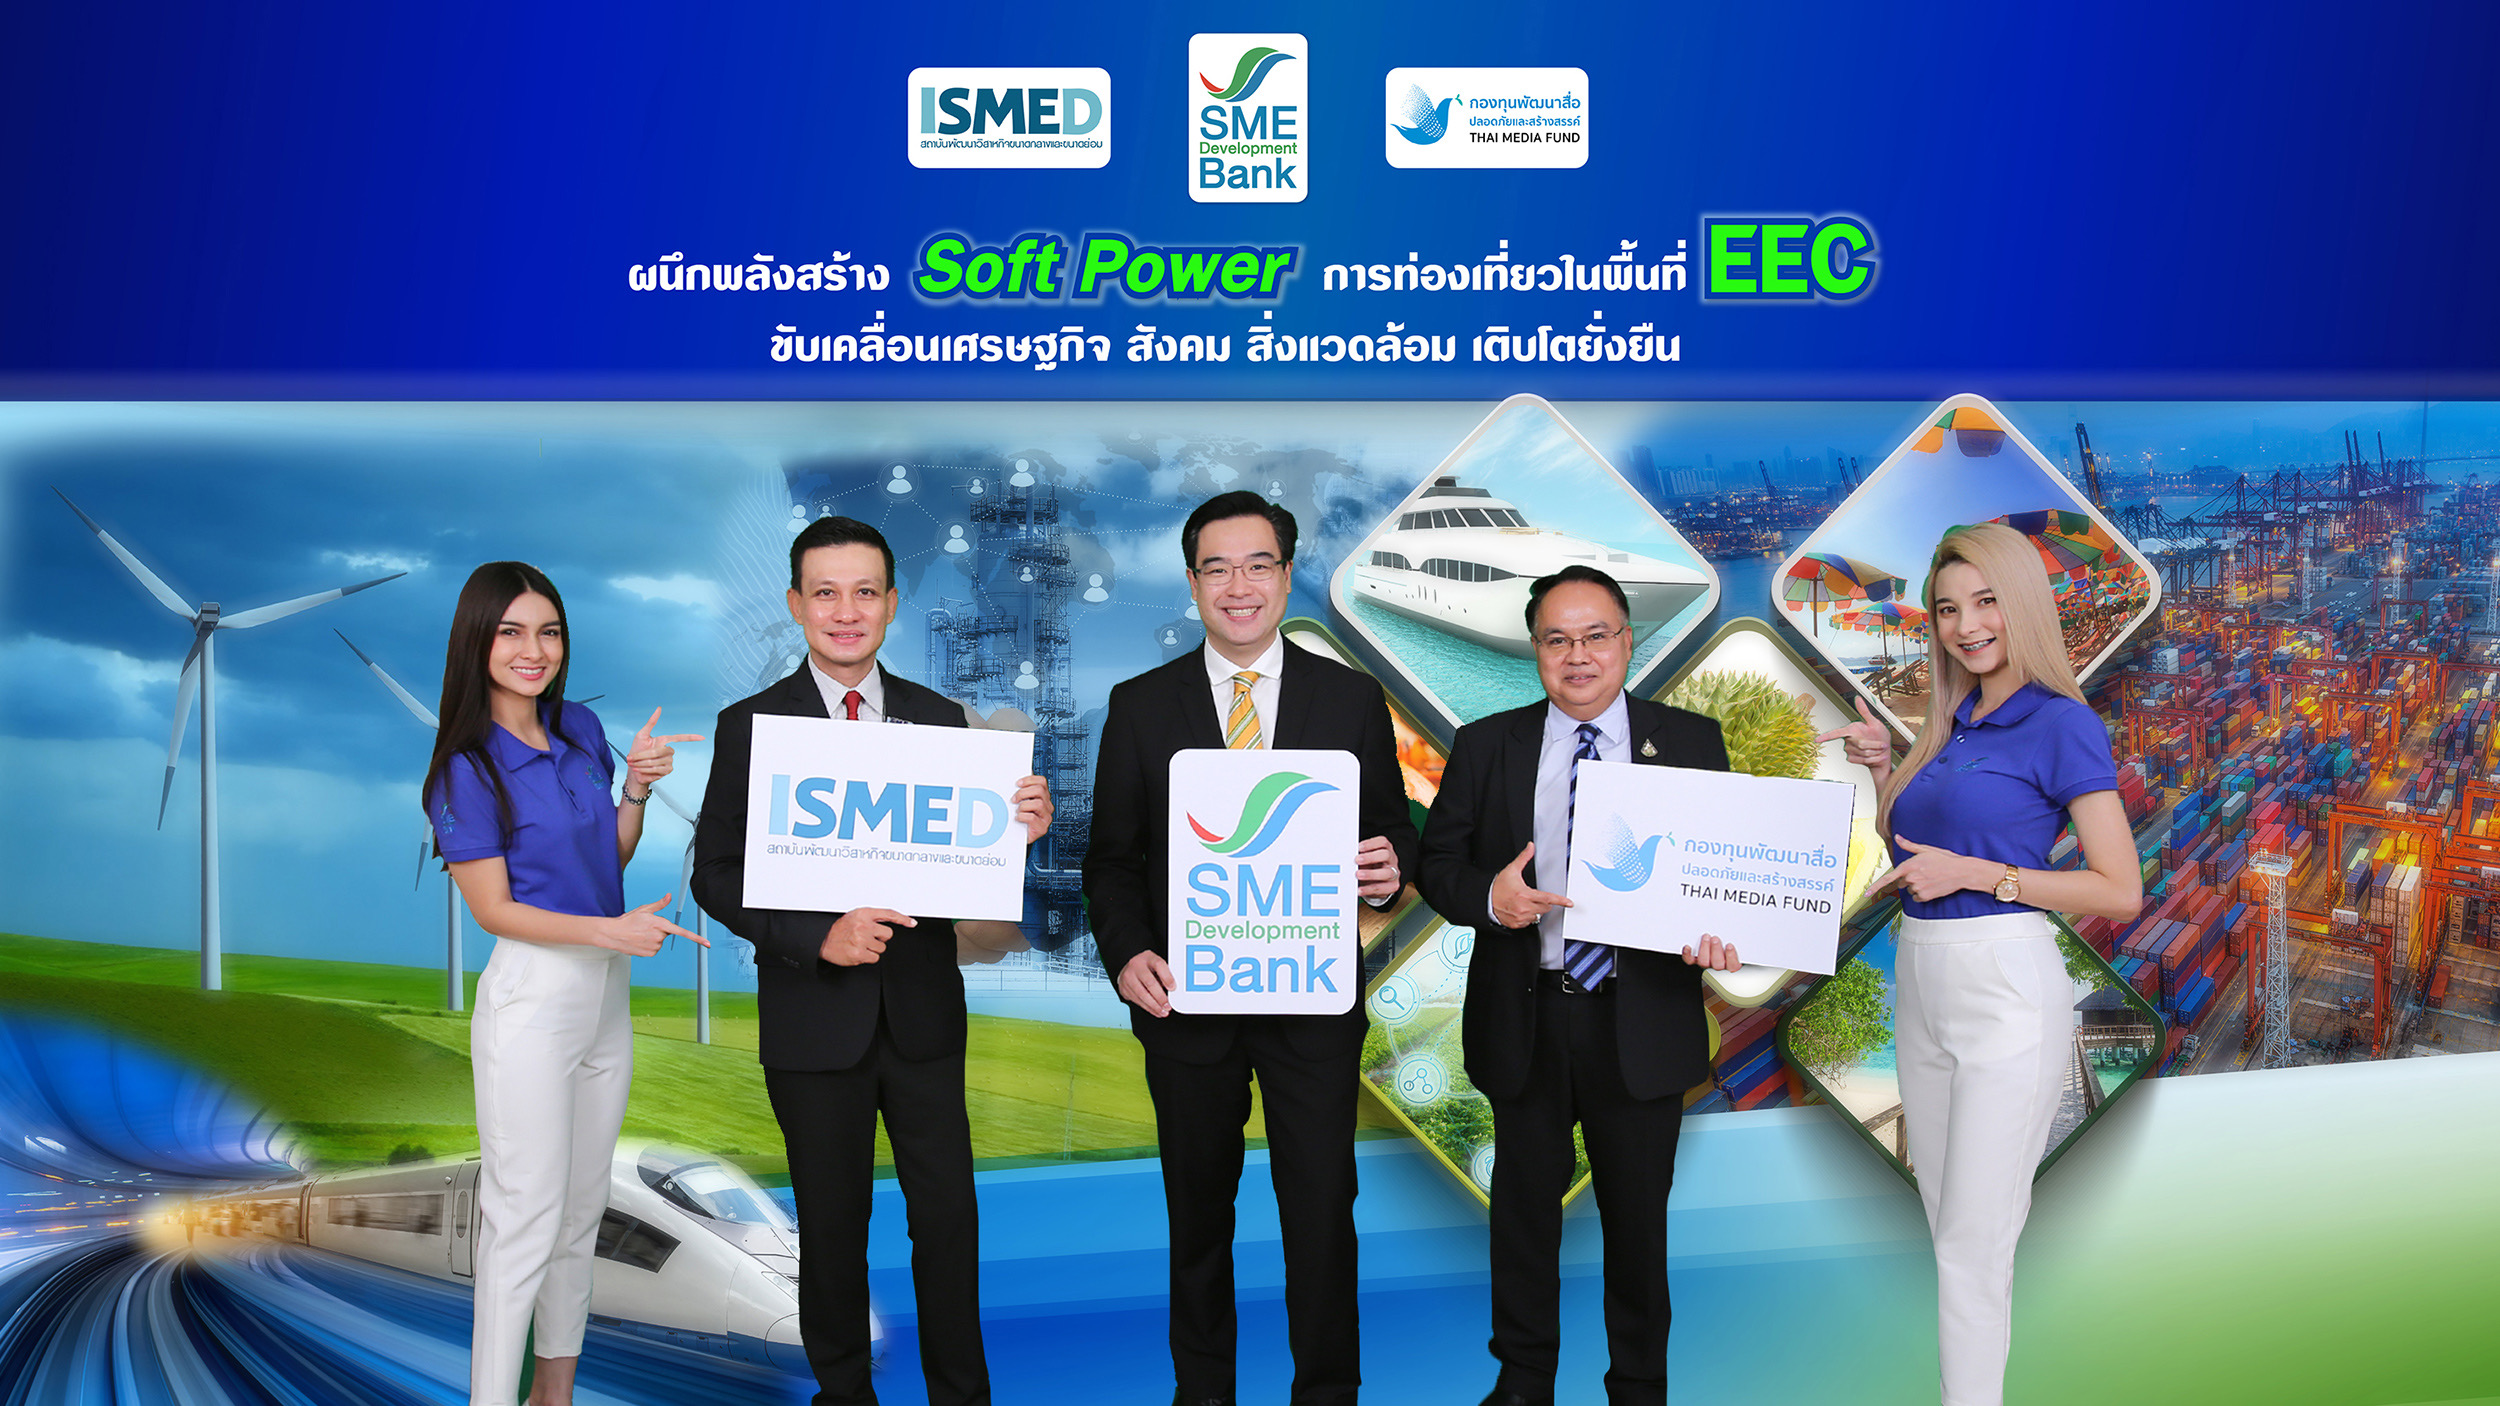 SME D Bank – กองทุนพัฒนาสื่อฯ - ISMED  ผนึกพลังสร้าง “Soft Power” ในพื้นที่ EEC